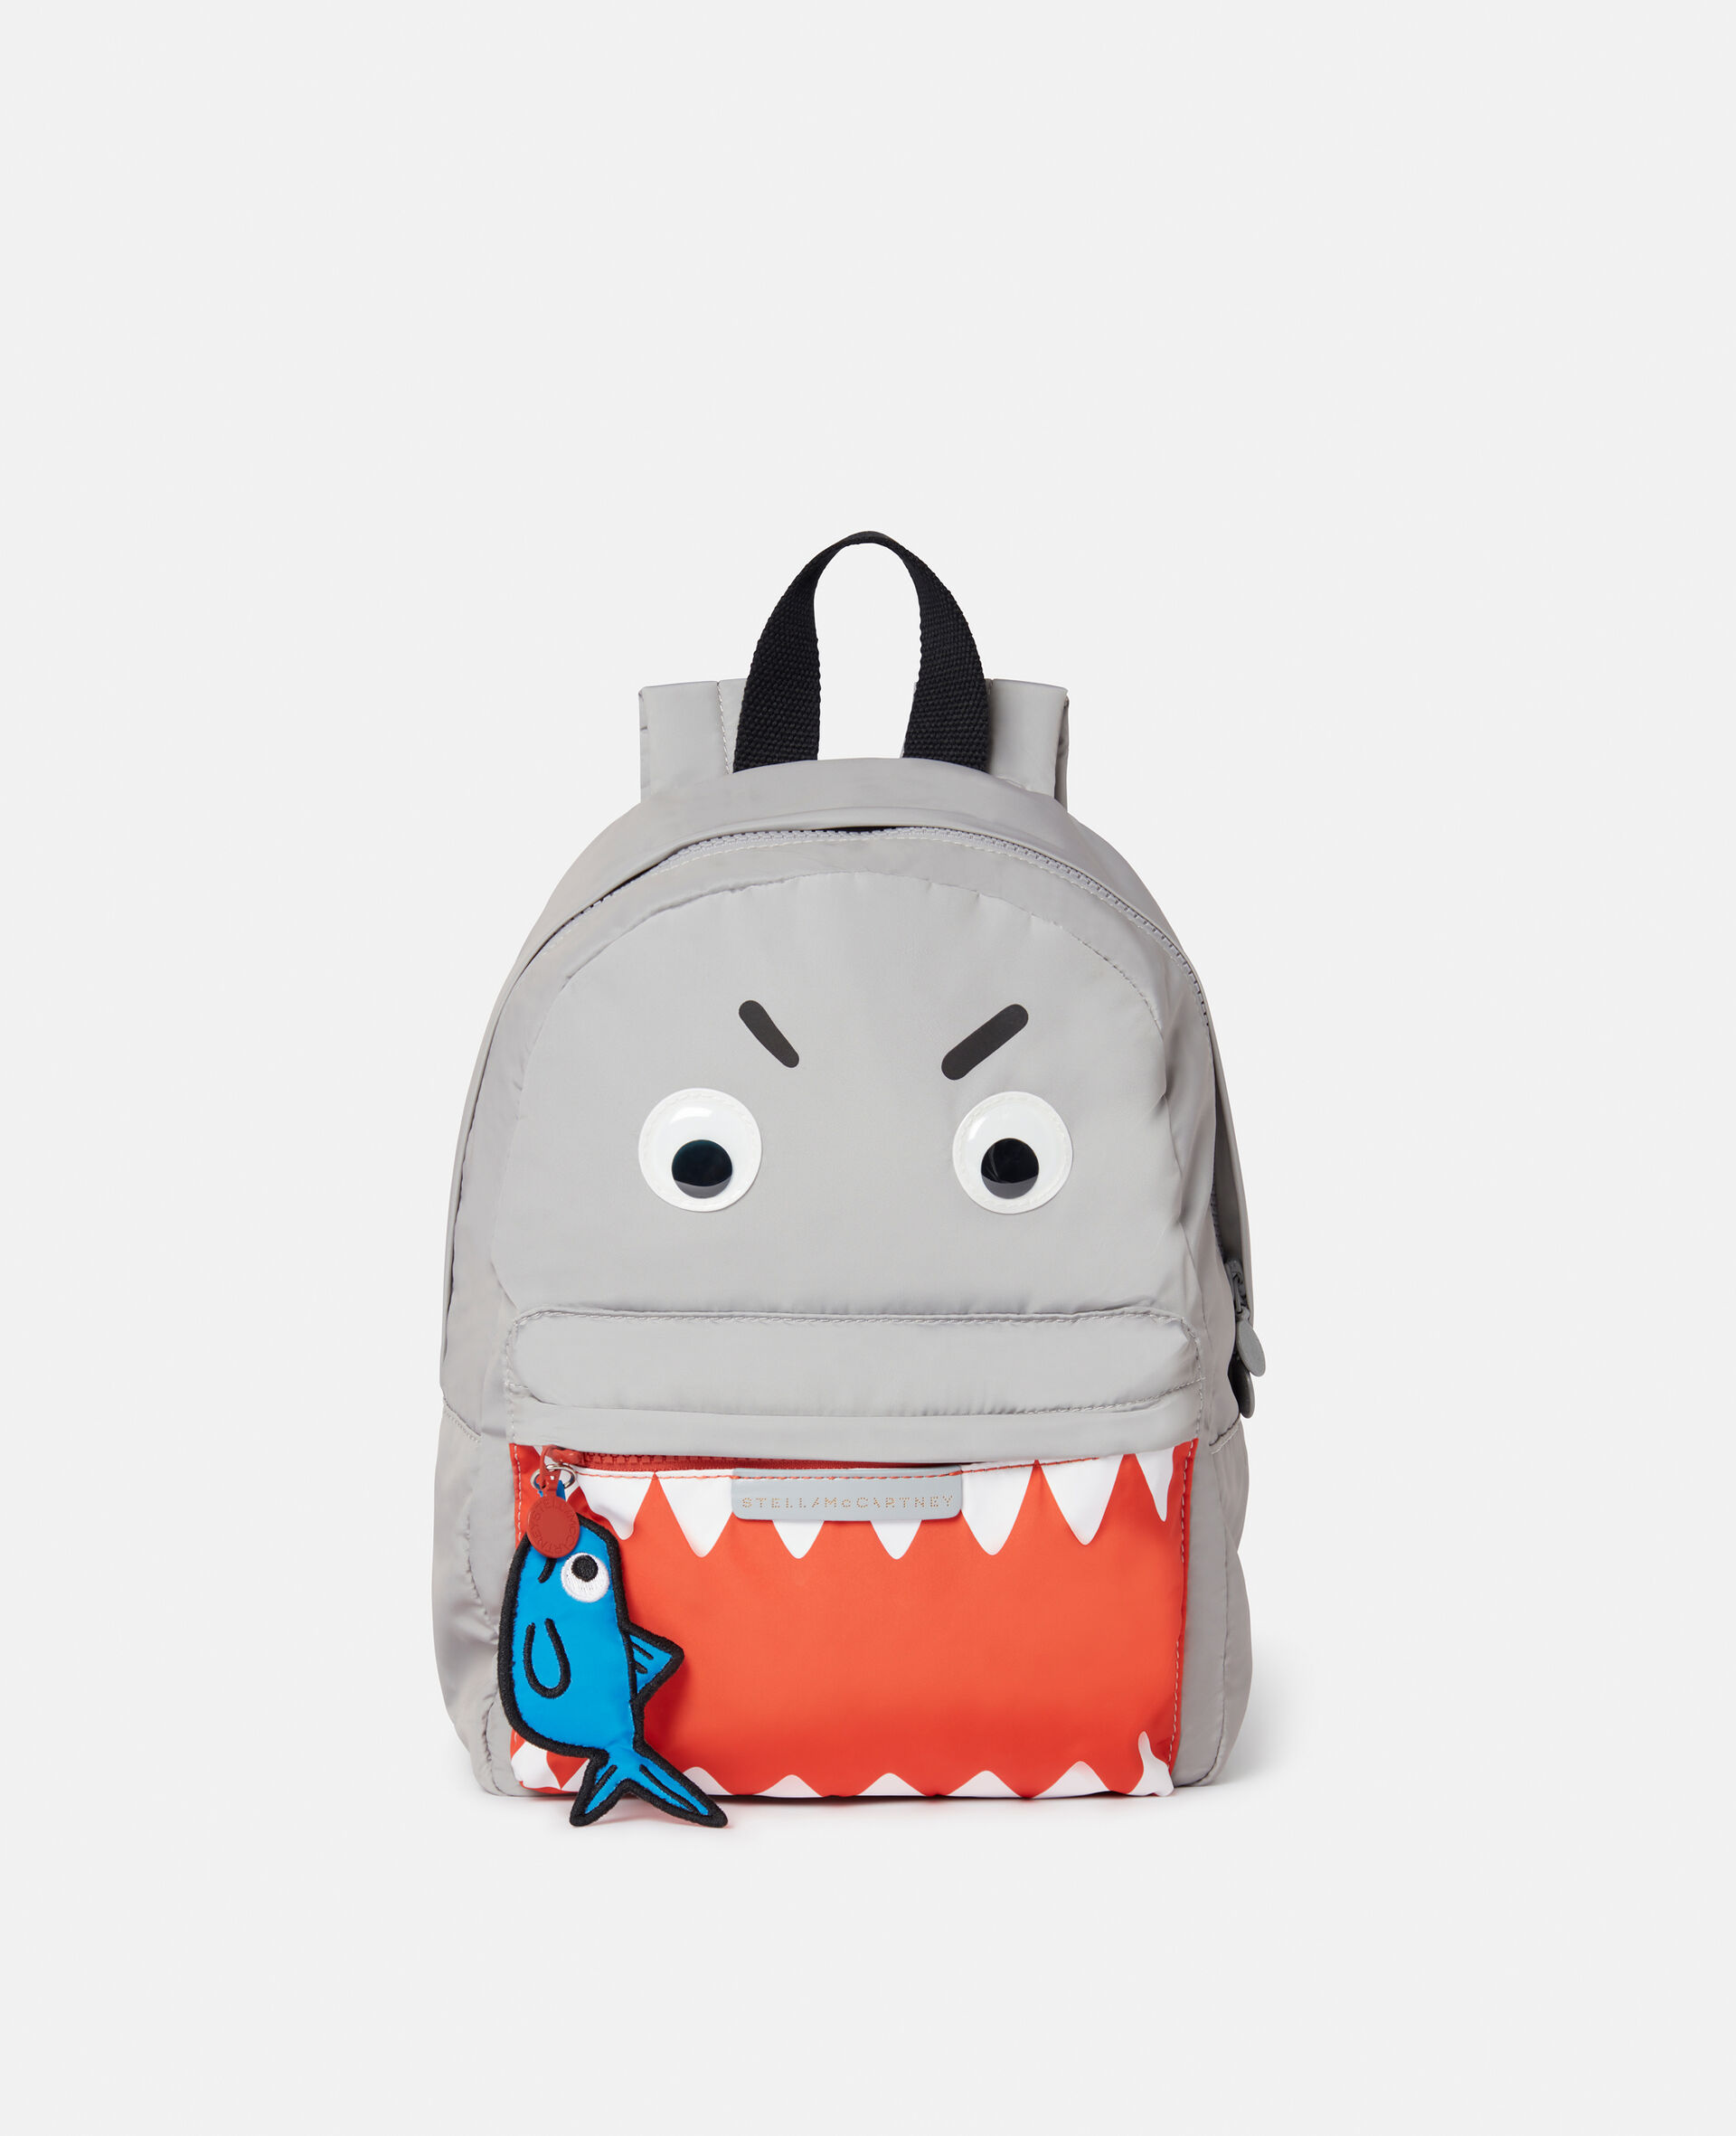 Shark Print Backpack-Grey-large image number 0